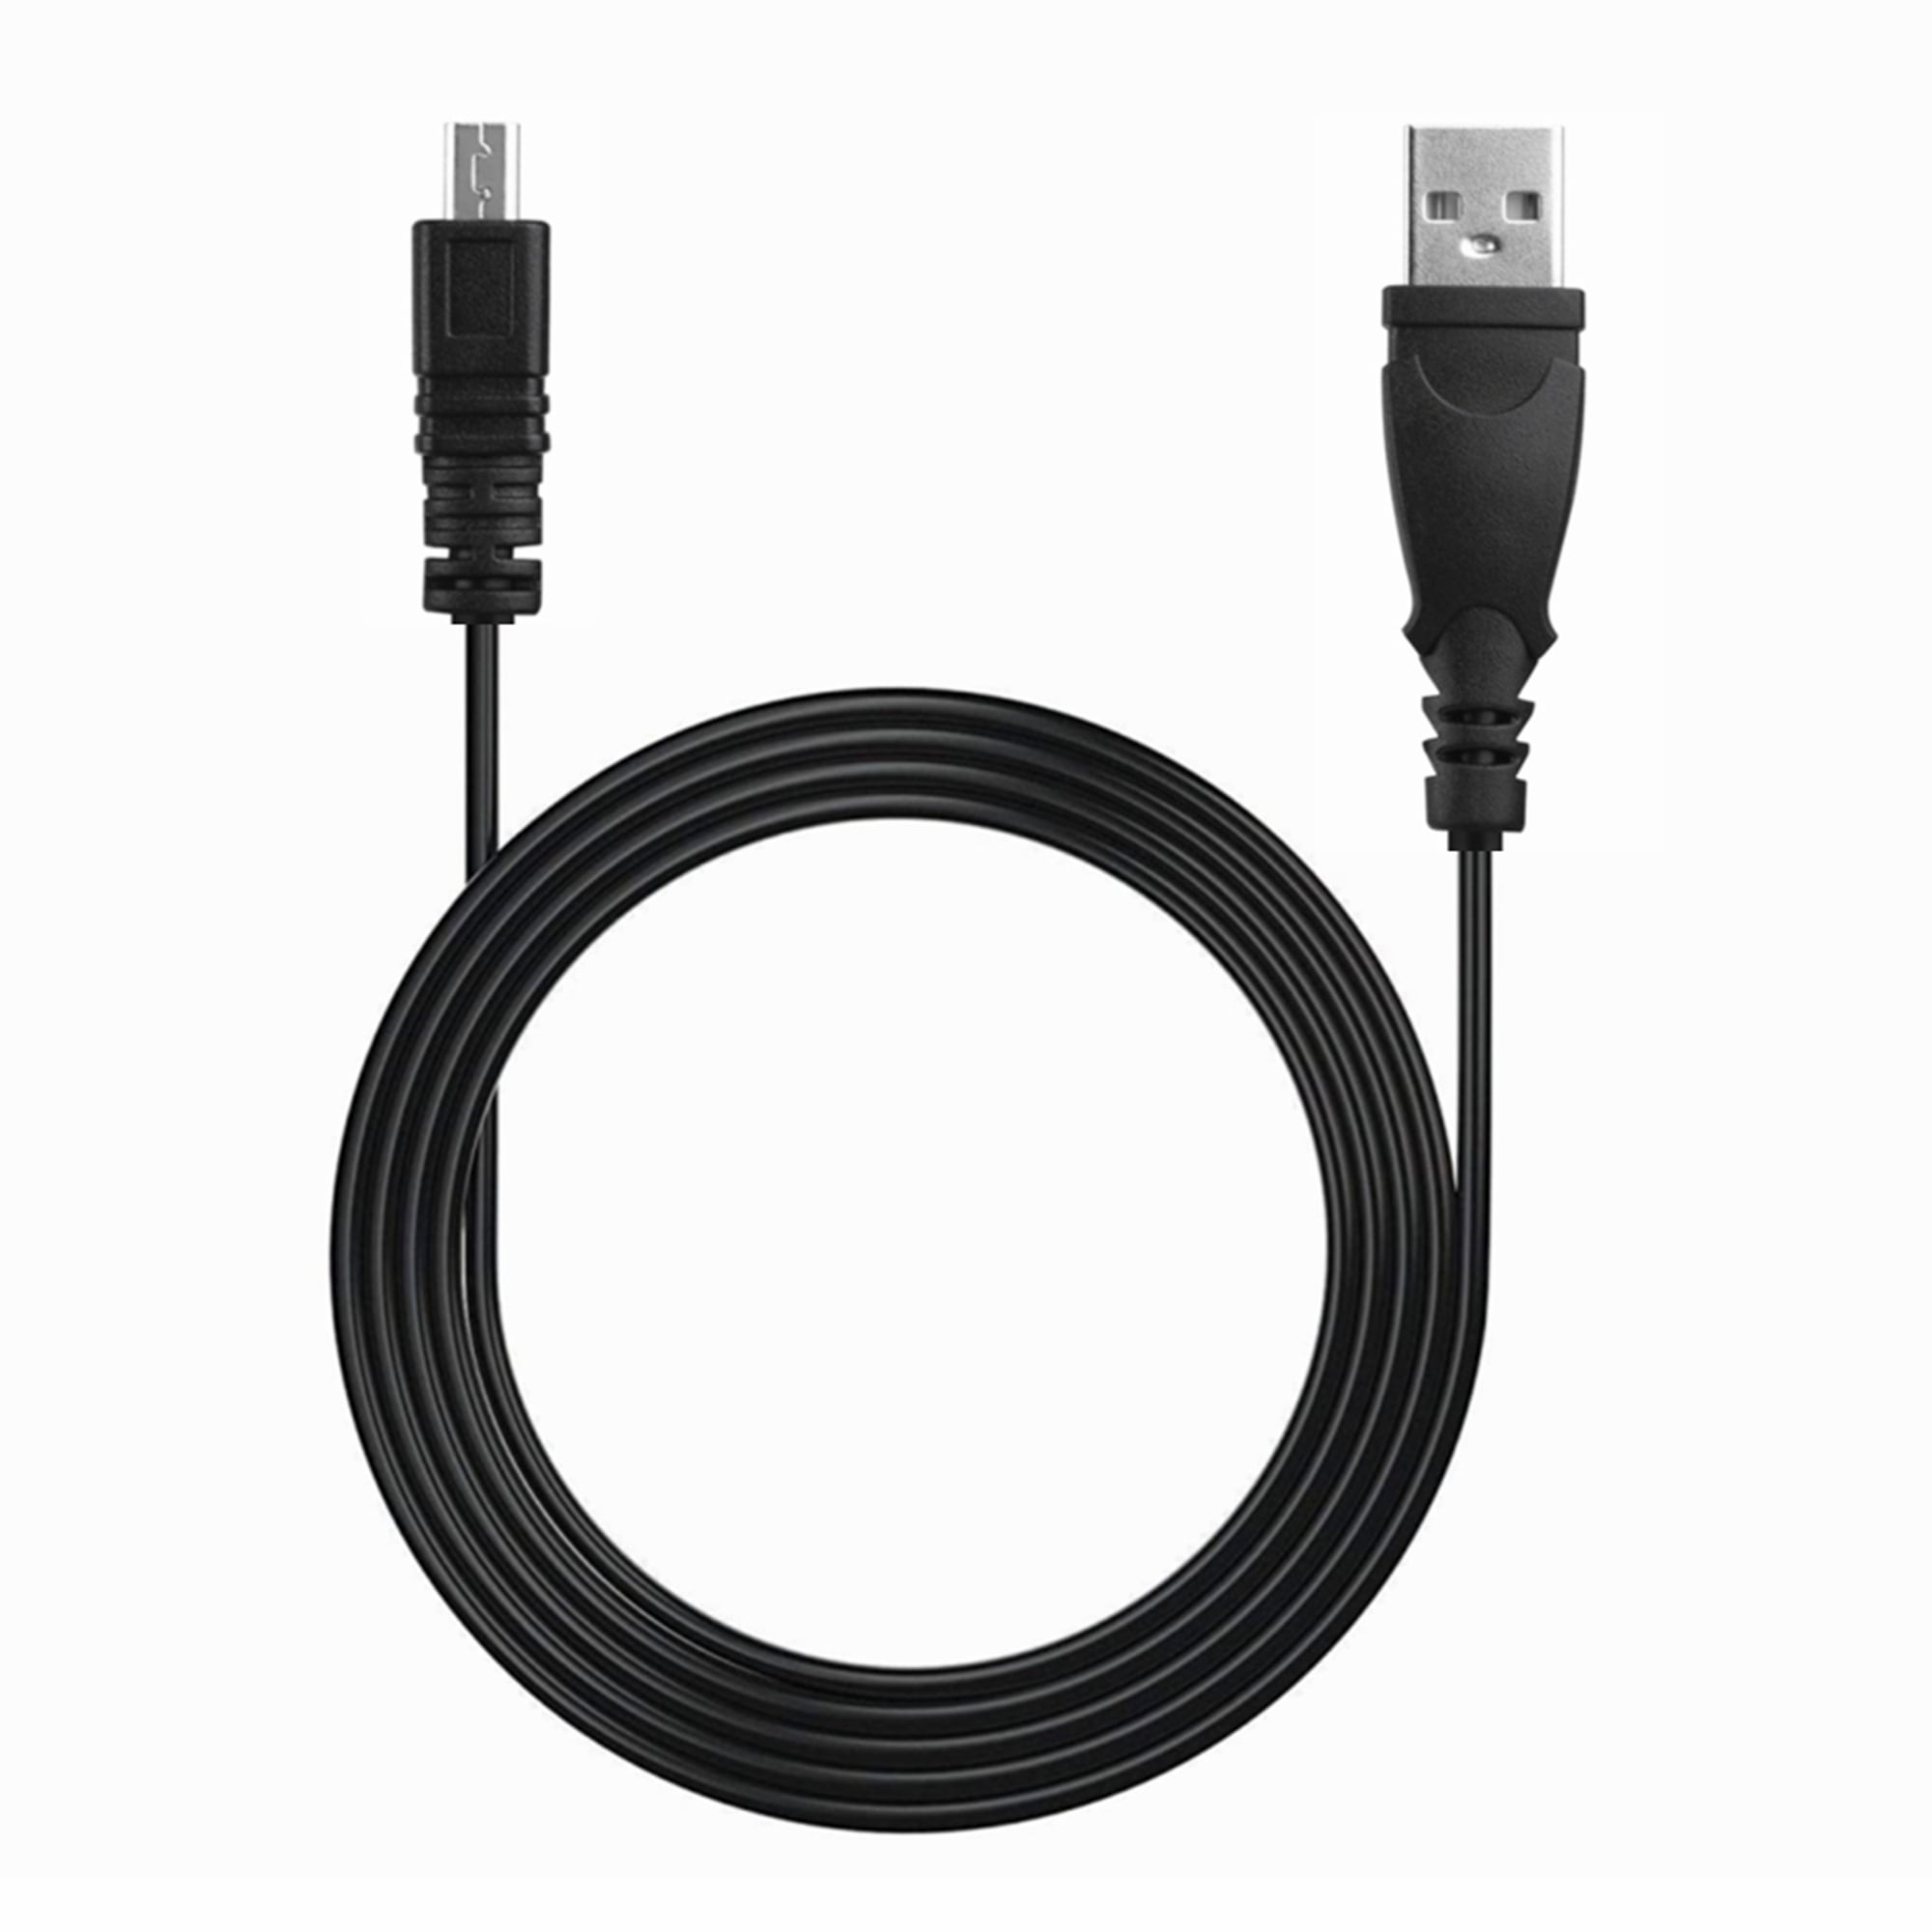 Fujifilm Pro USB Firewire Cable 15ft 600004989 